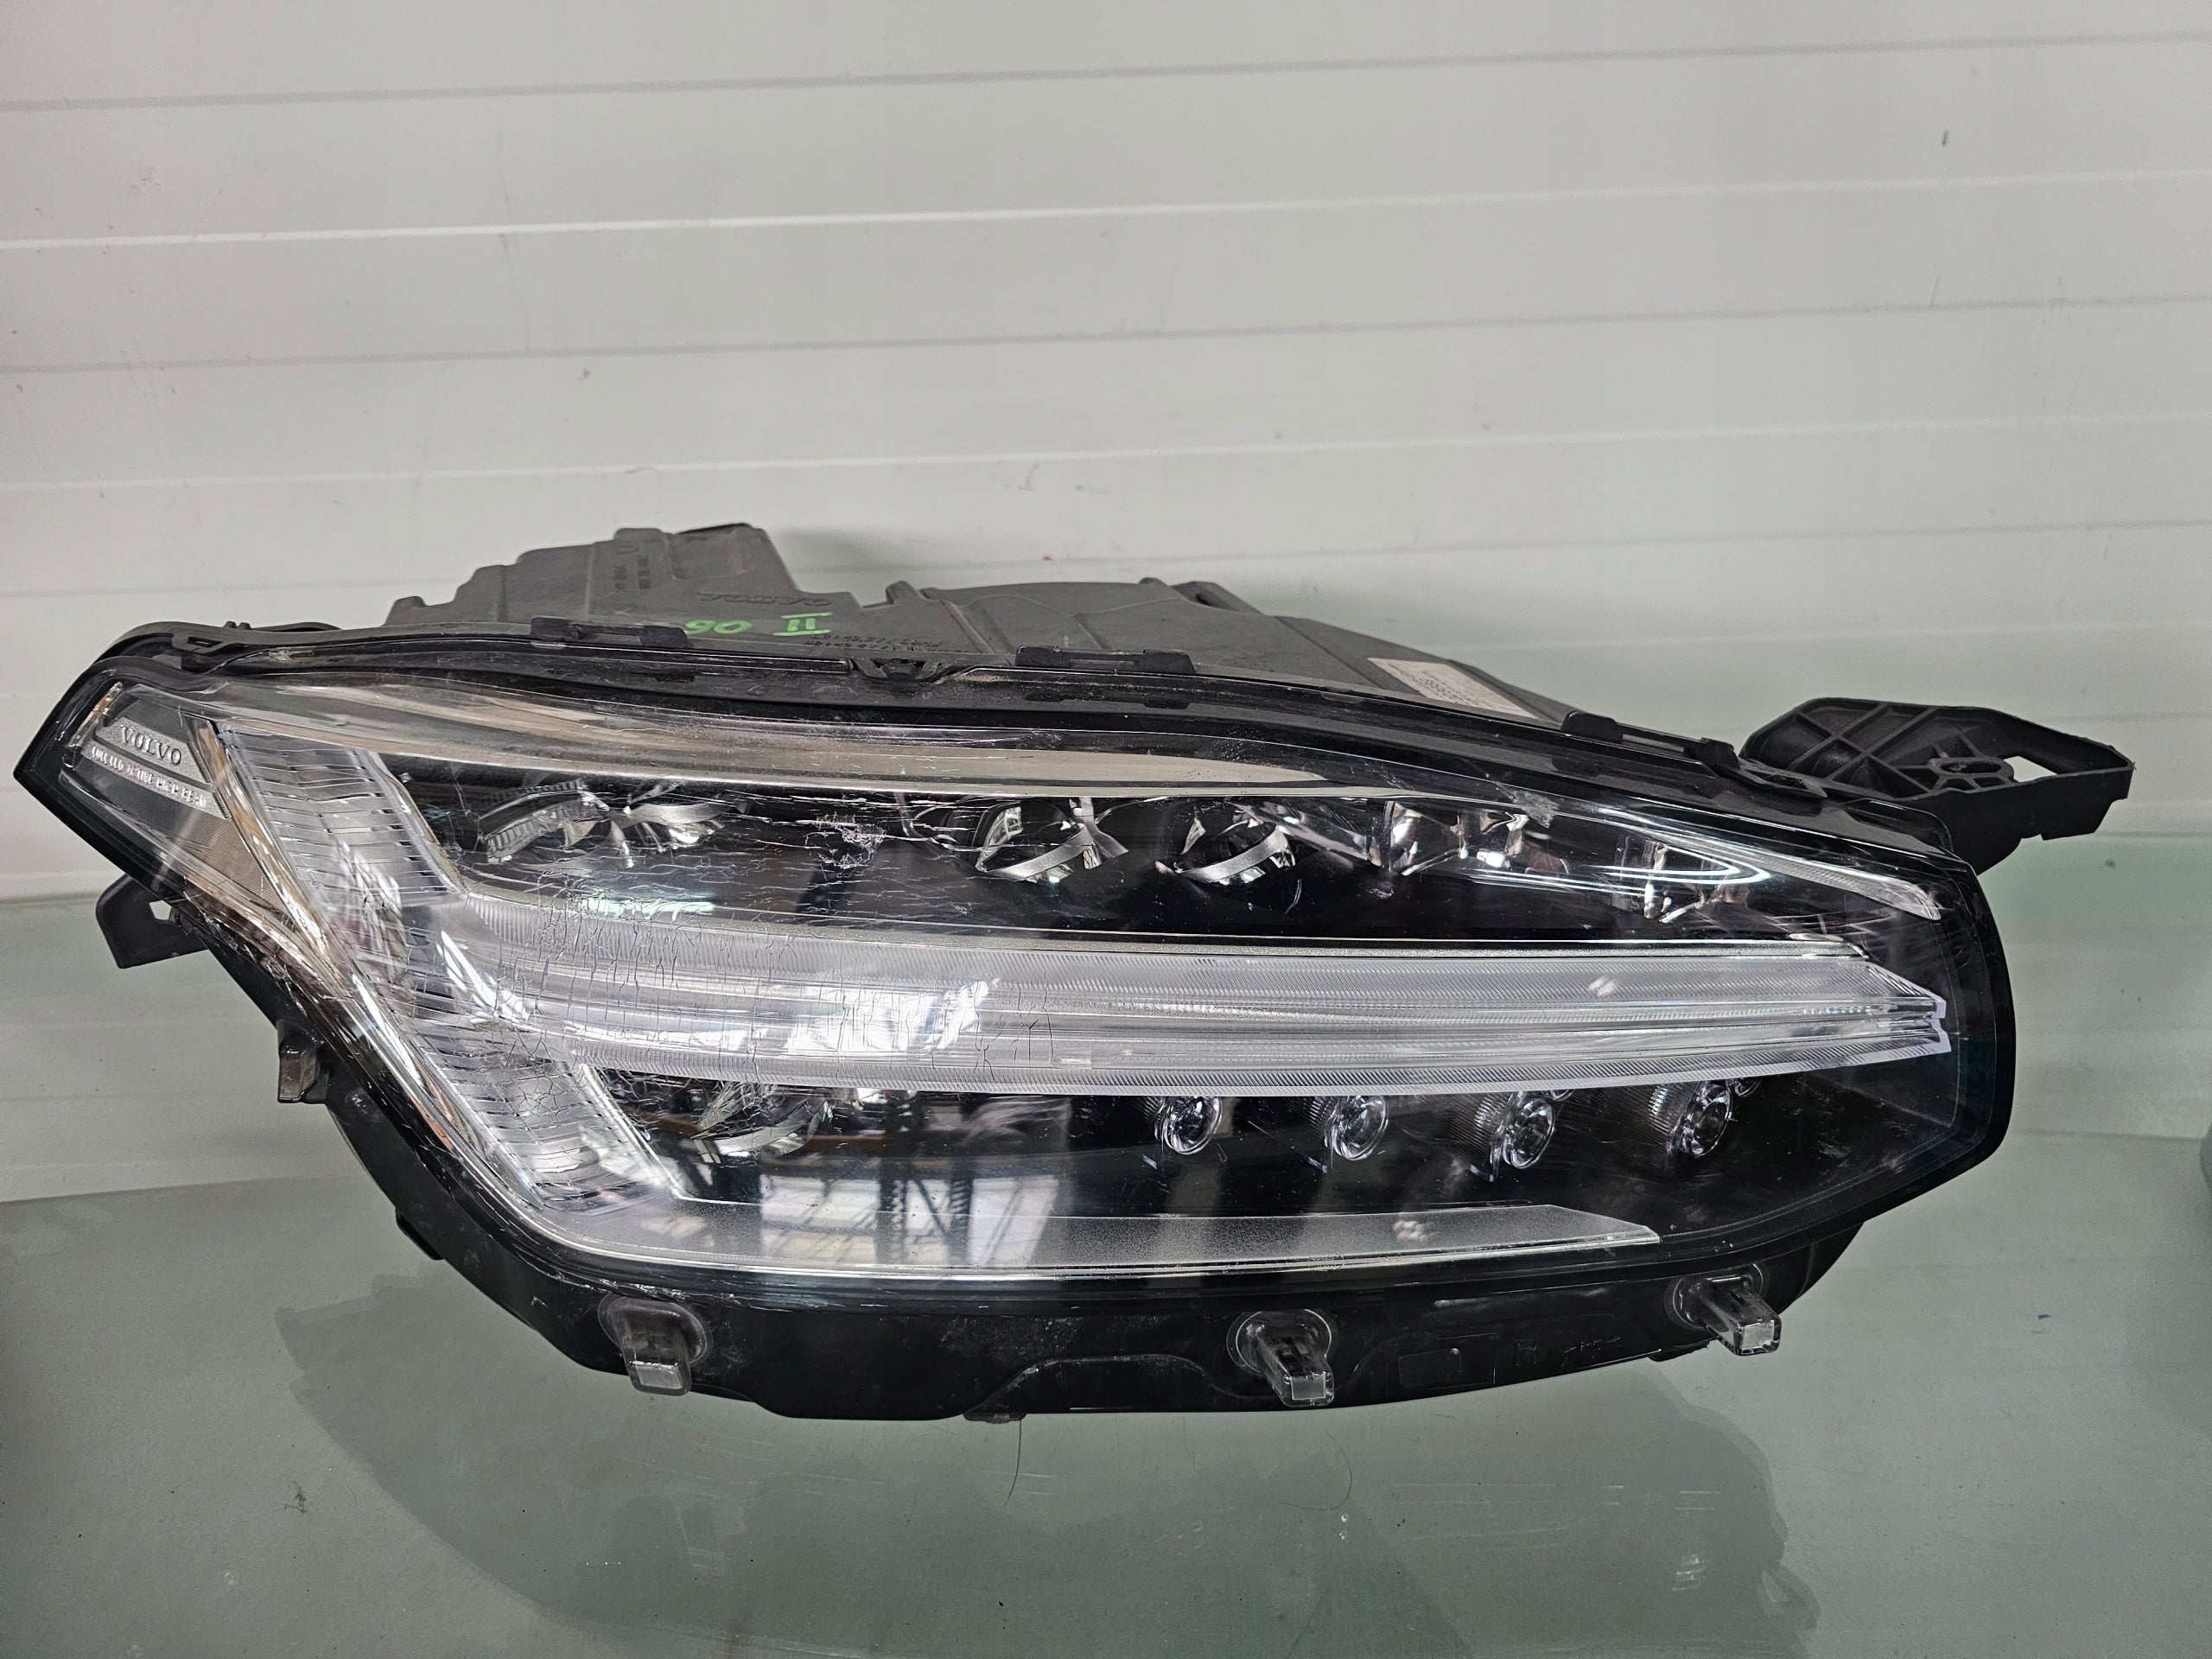  Frontscheinwerfer Volvo XC90 LED Rechts Original Scheinwerfer Headlight product image